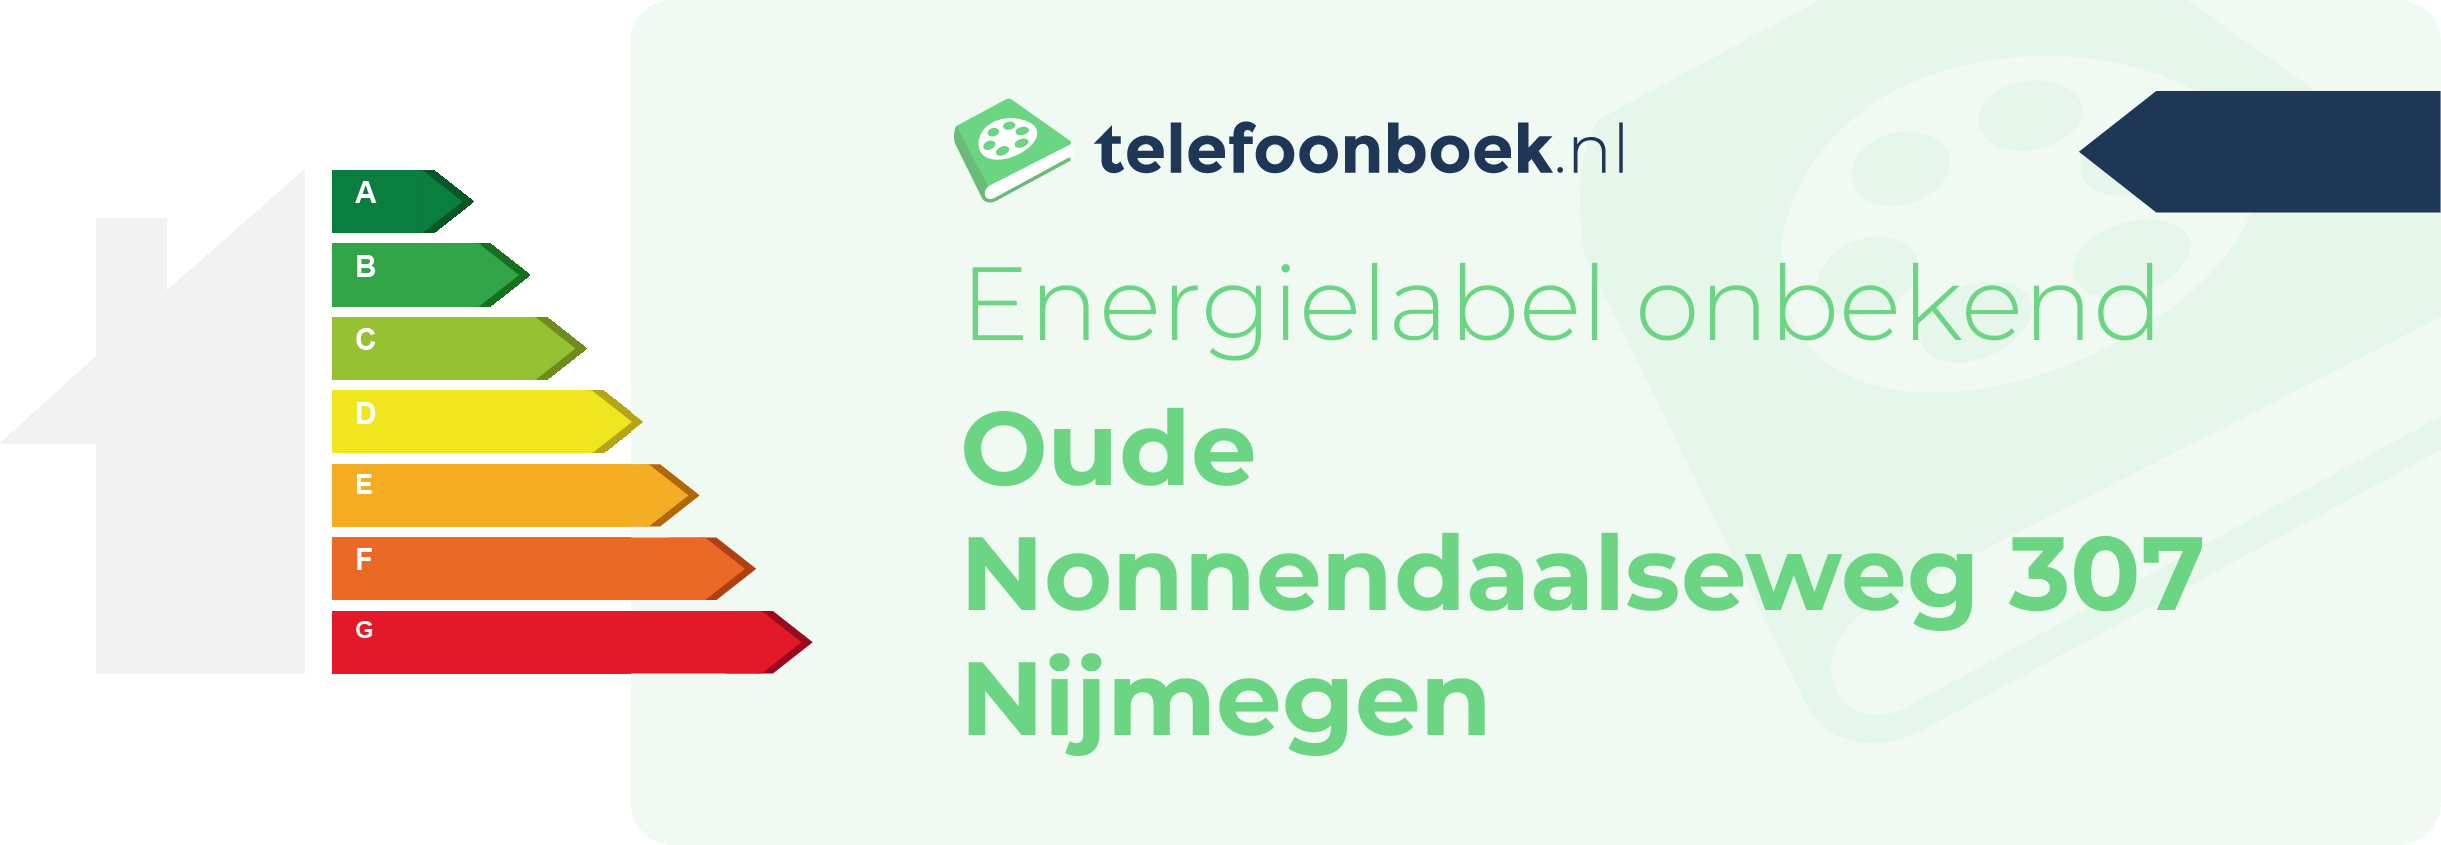 Energielabel Oude Nonnendaalseweg 307 Nijmegen